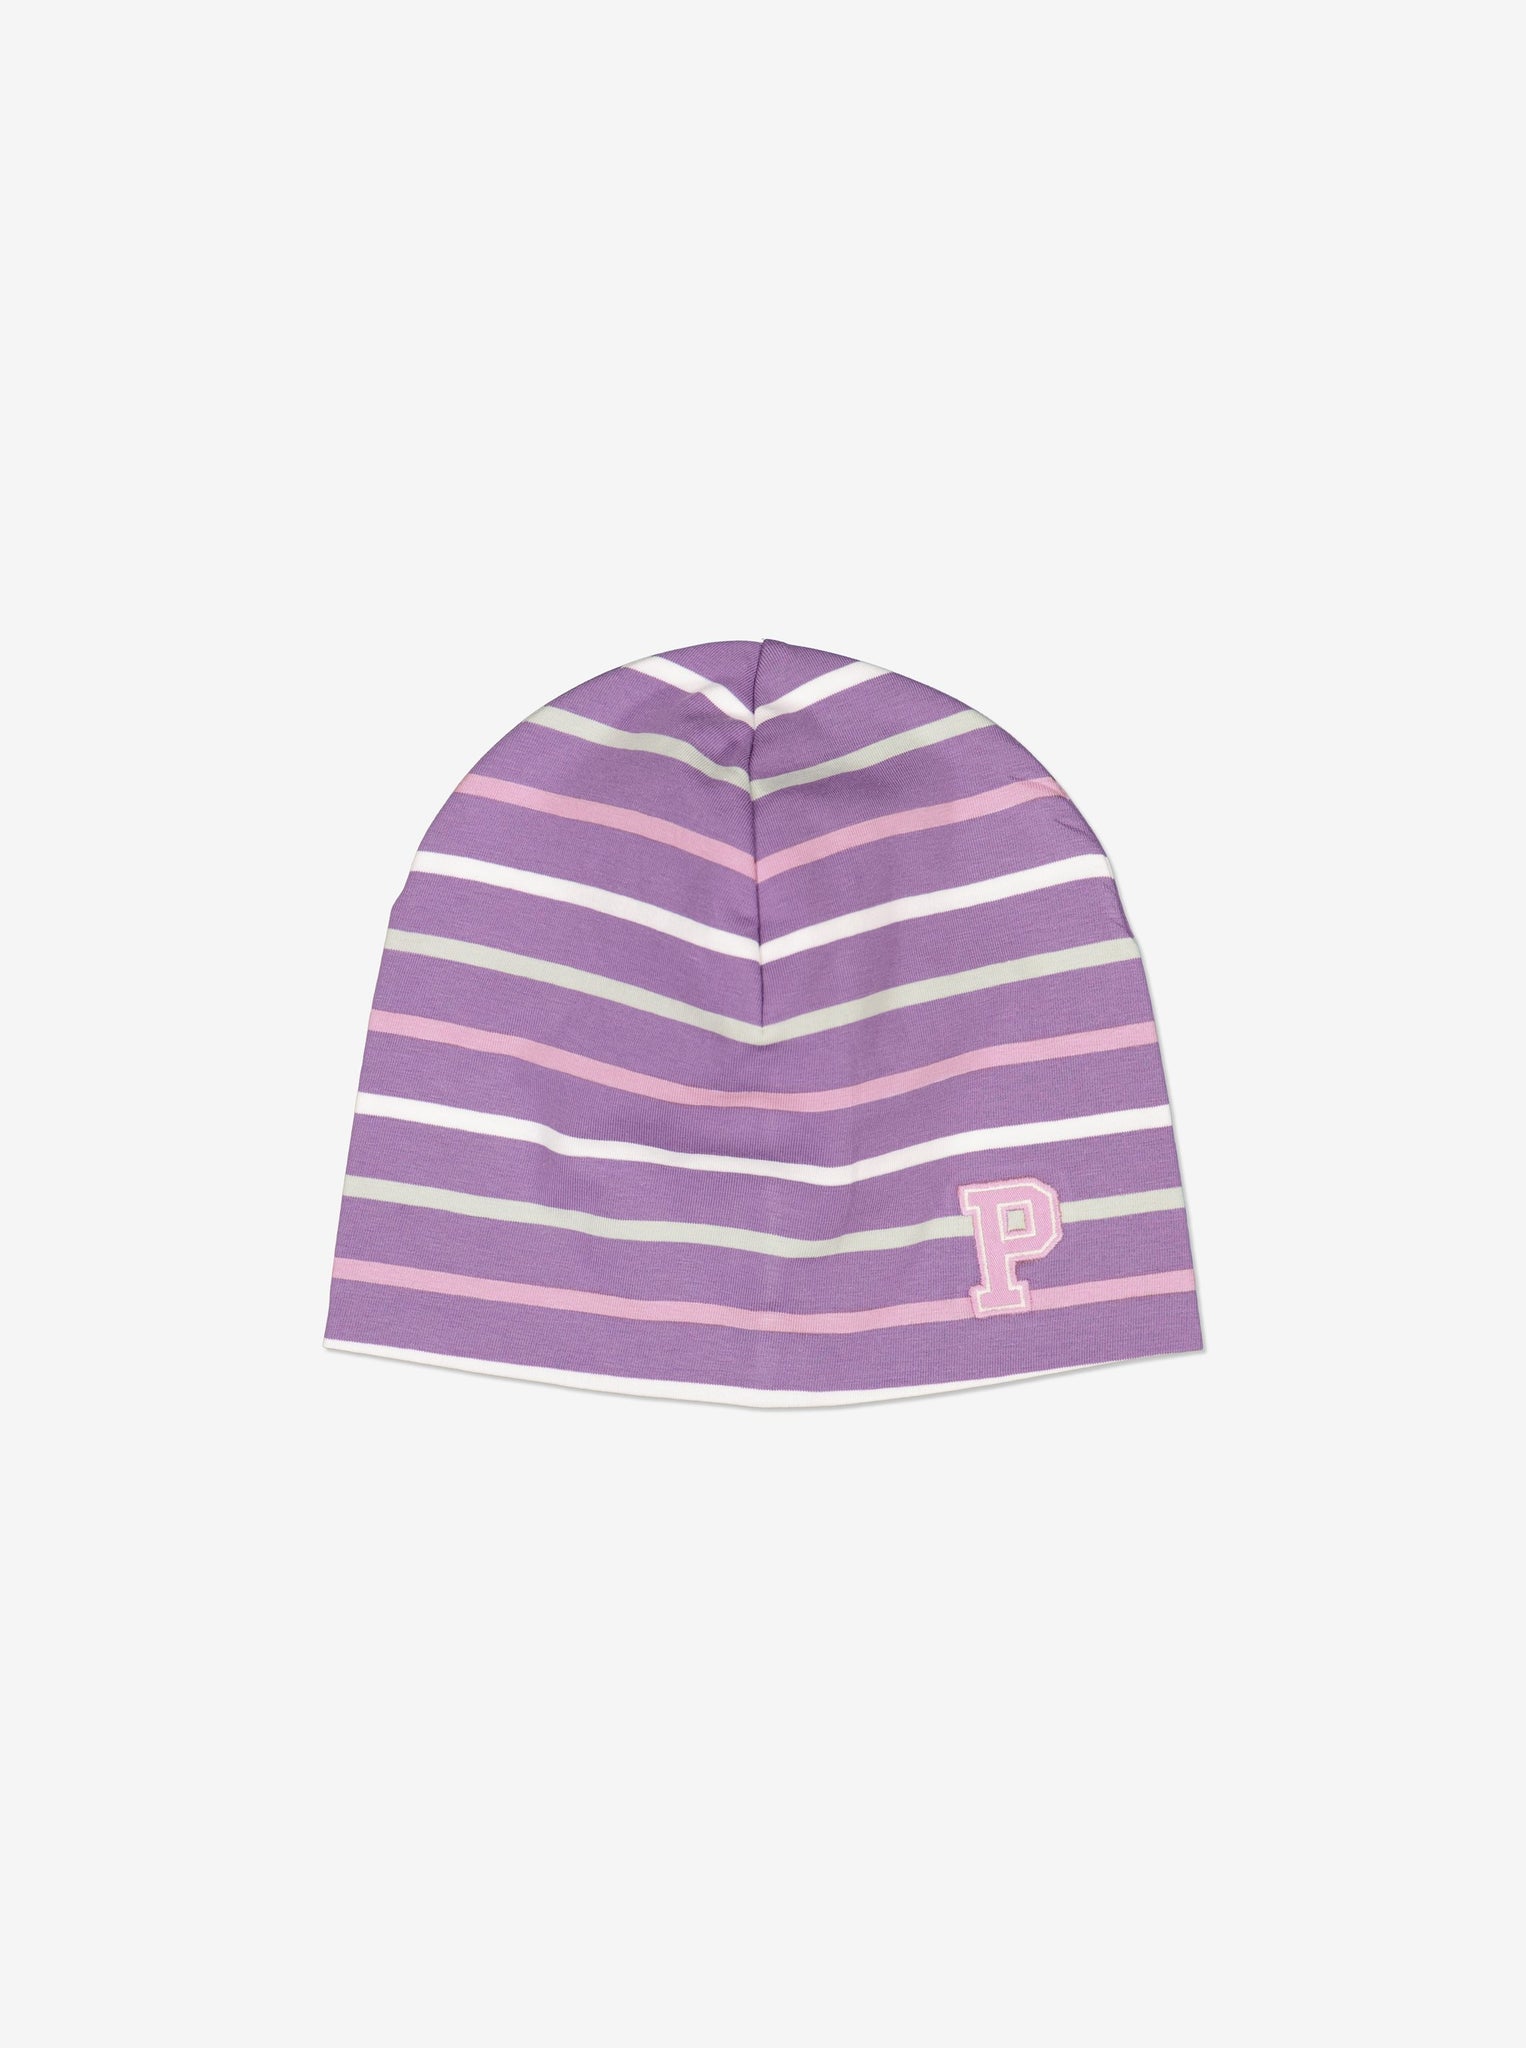 Striped Purple Kids Beanie Hat from Polarn O. Pyret Kidswear. Warm kids beanie